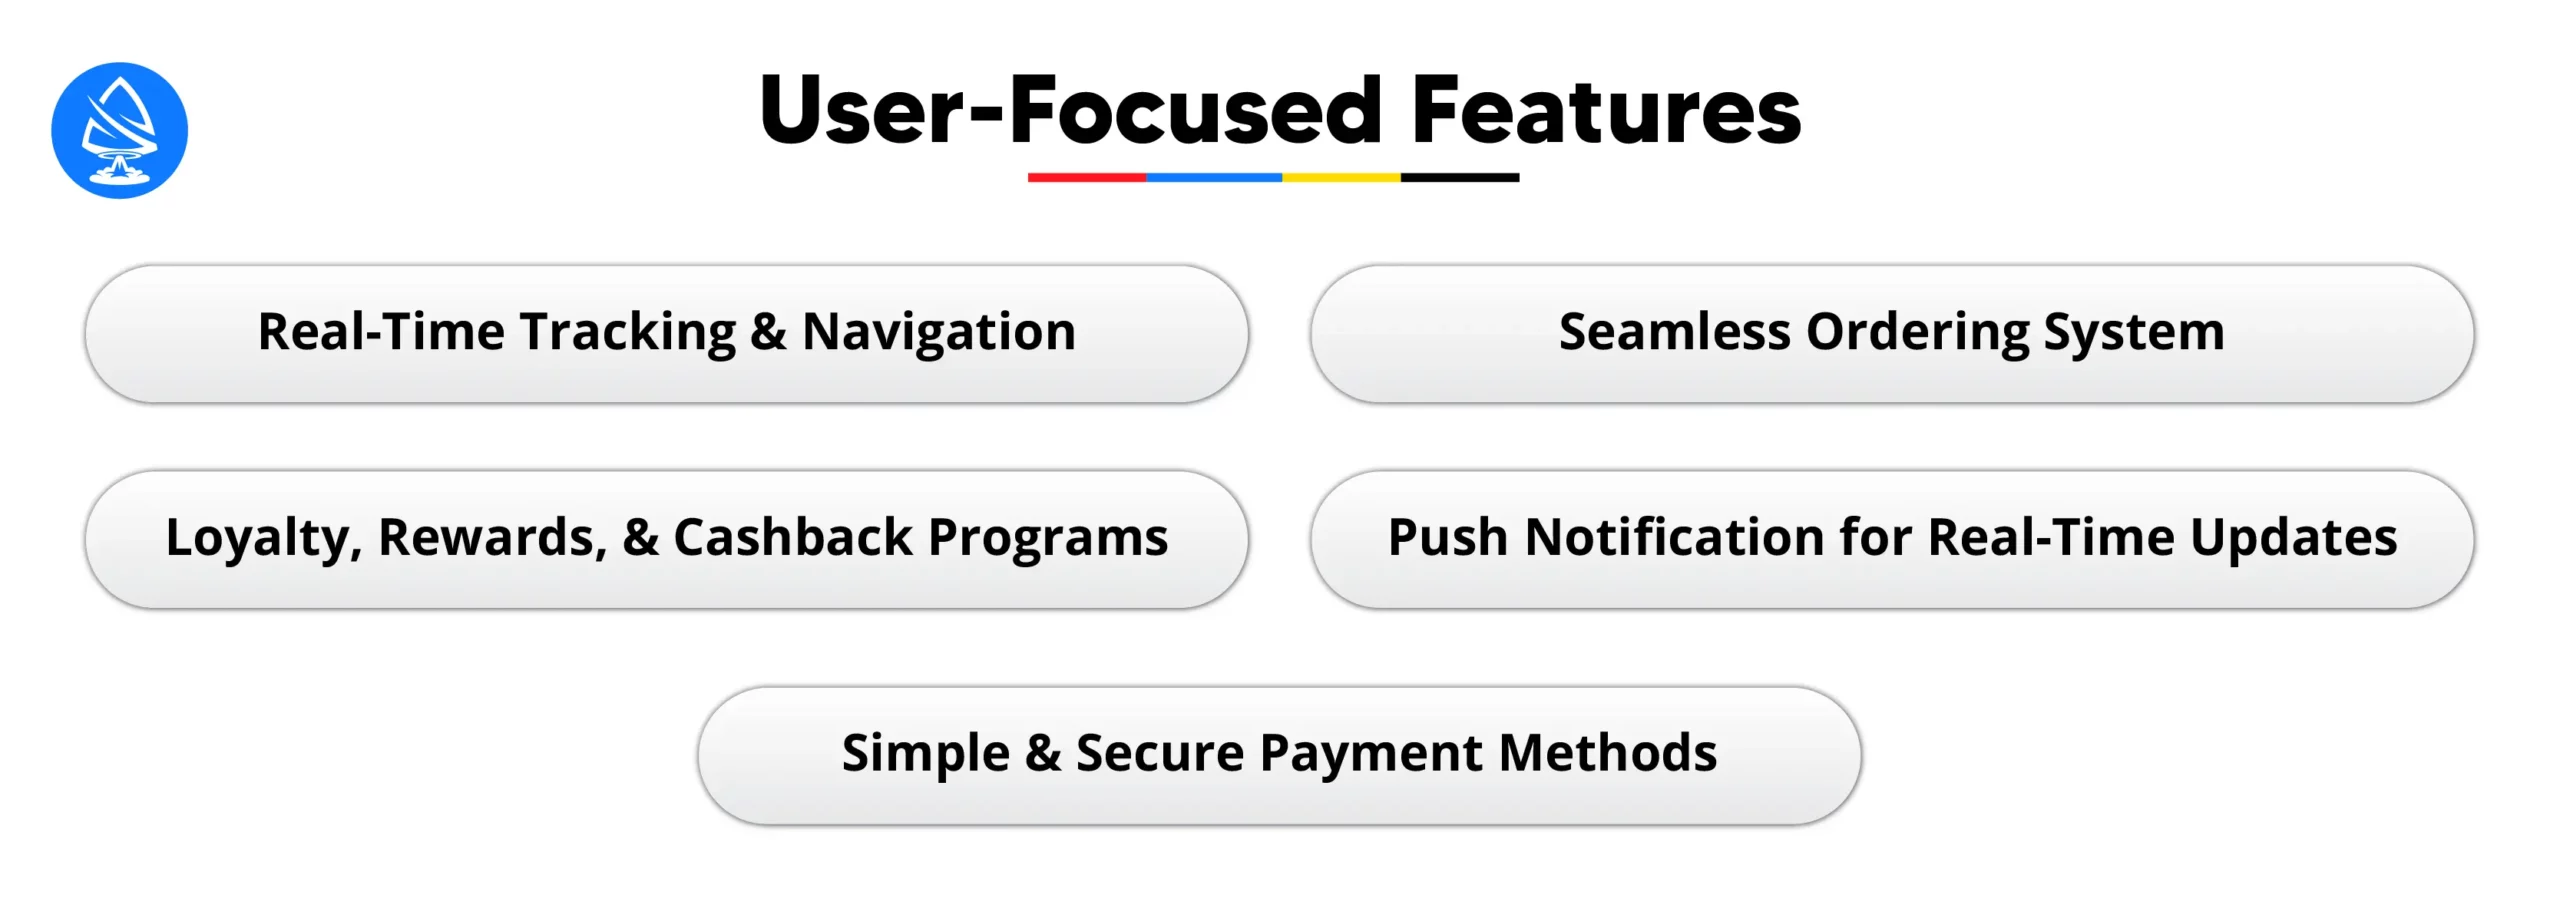 User-Focused Features